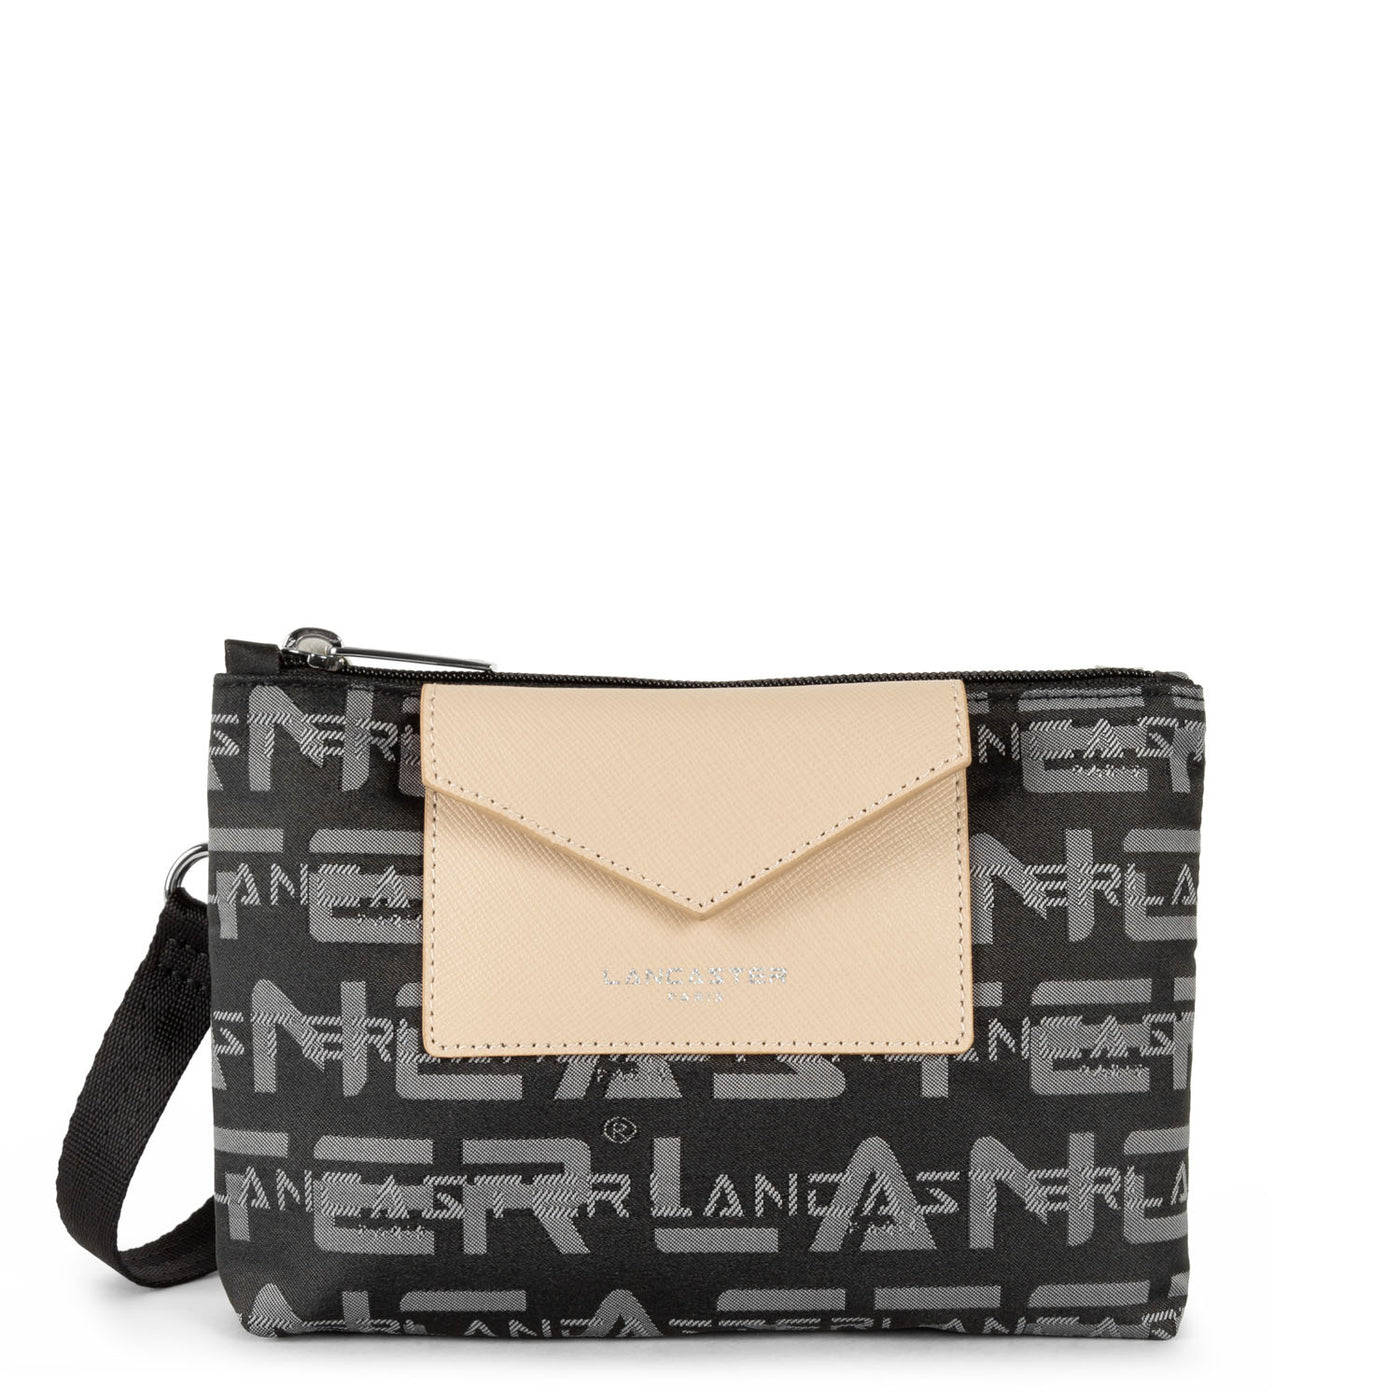 petit sac trotteur - logo kba #couleur_noir-gris-poudre